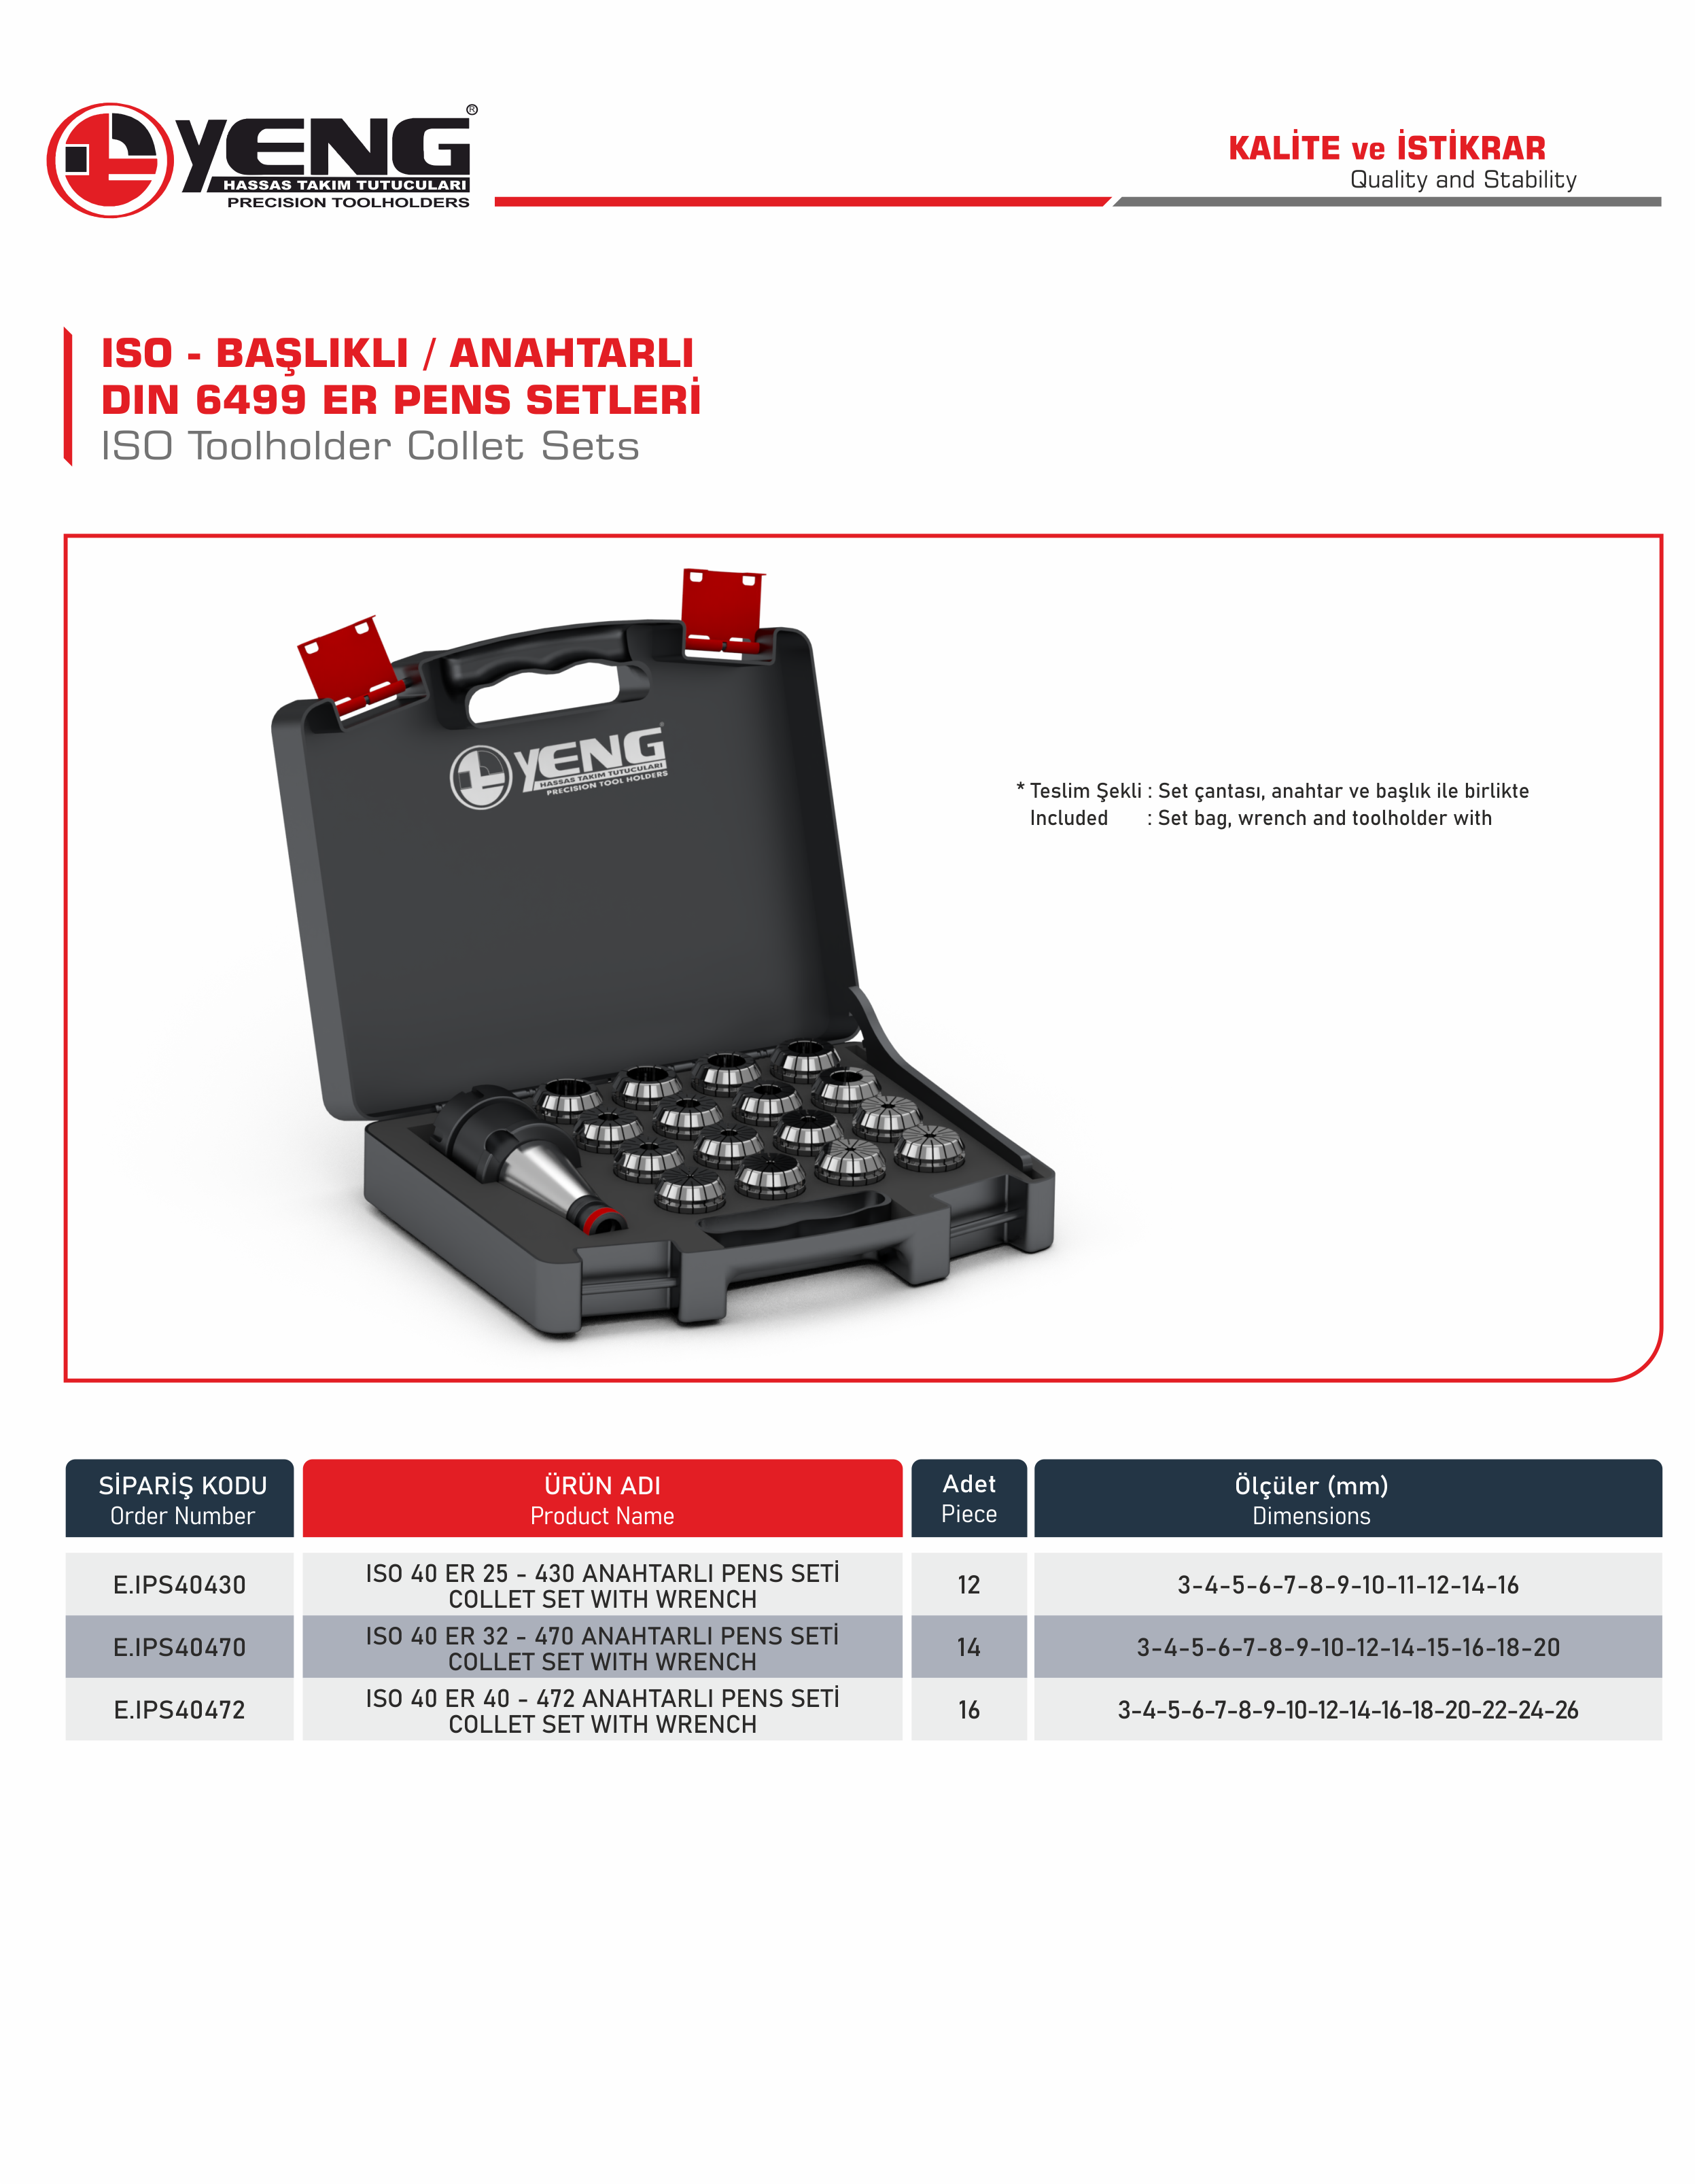 ISO Başlıklı - Anahtarlı Pens Setleri / DIN 6499 ER